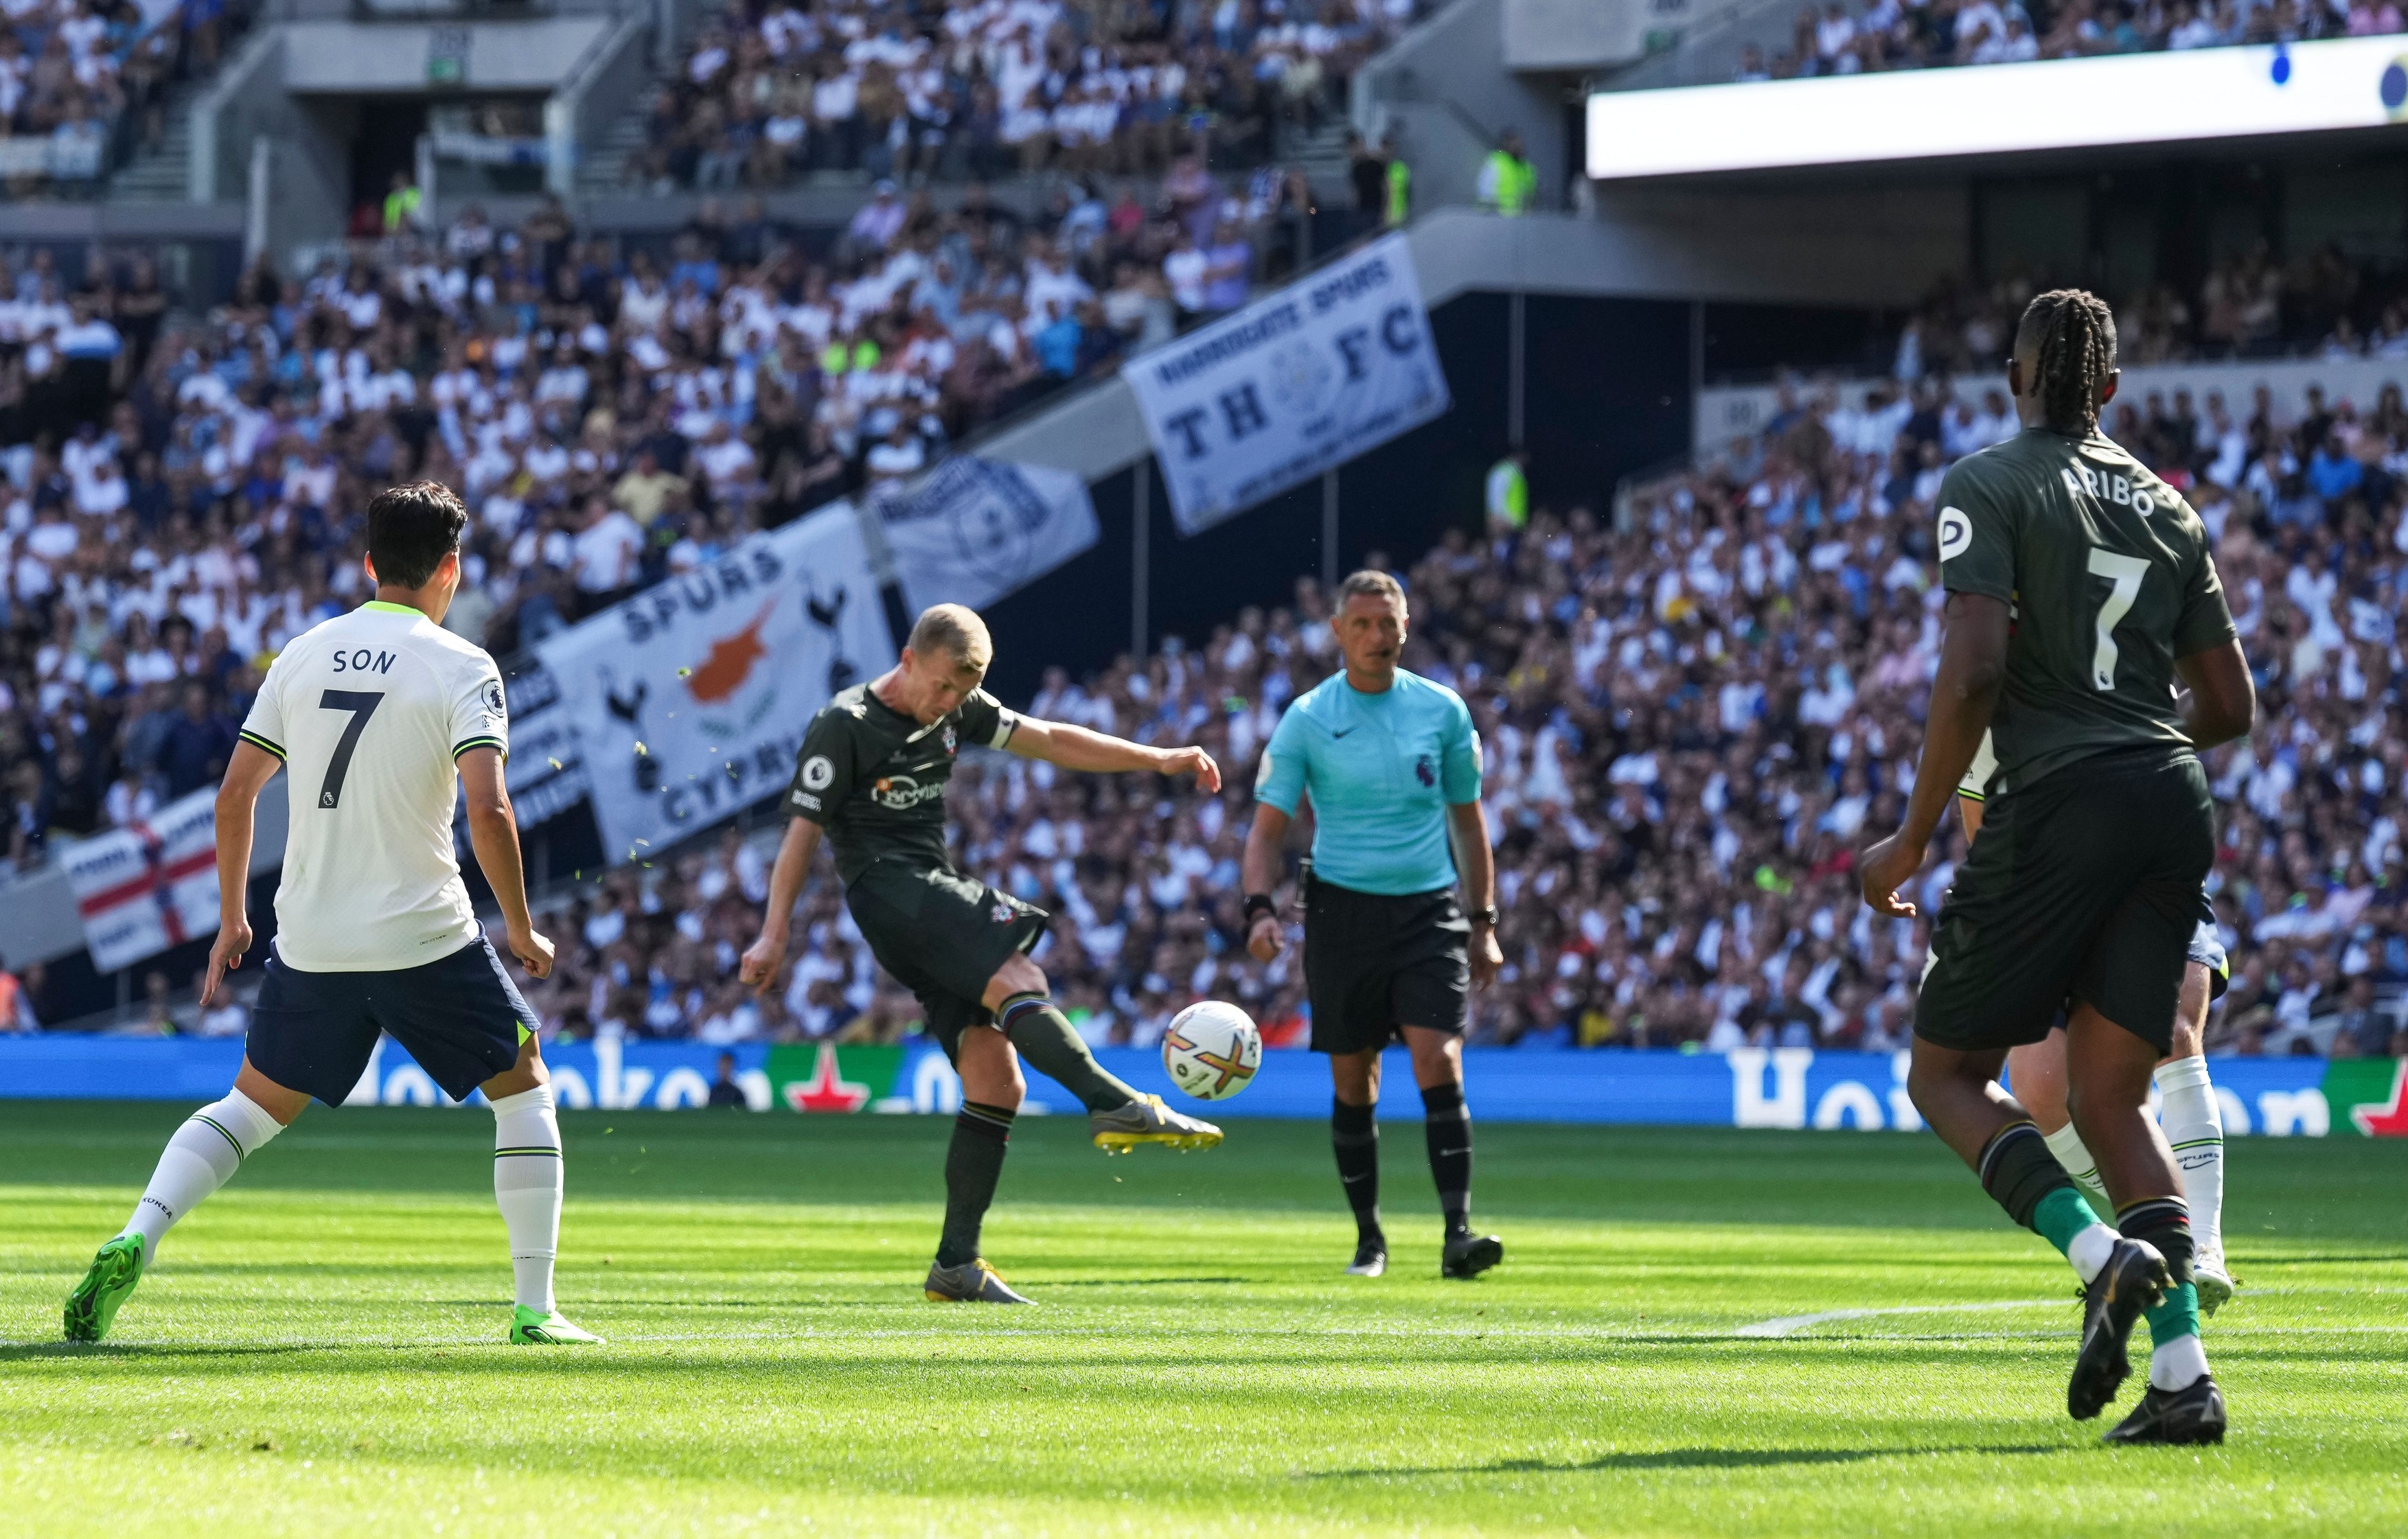 Southampton - Tottenham 0-0, ACUM, pe Digi Sport 1. Trupa lui Conte continuă luptă pentru un loc în top 4